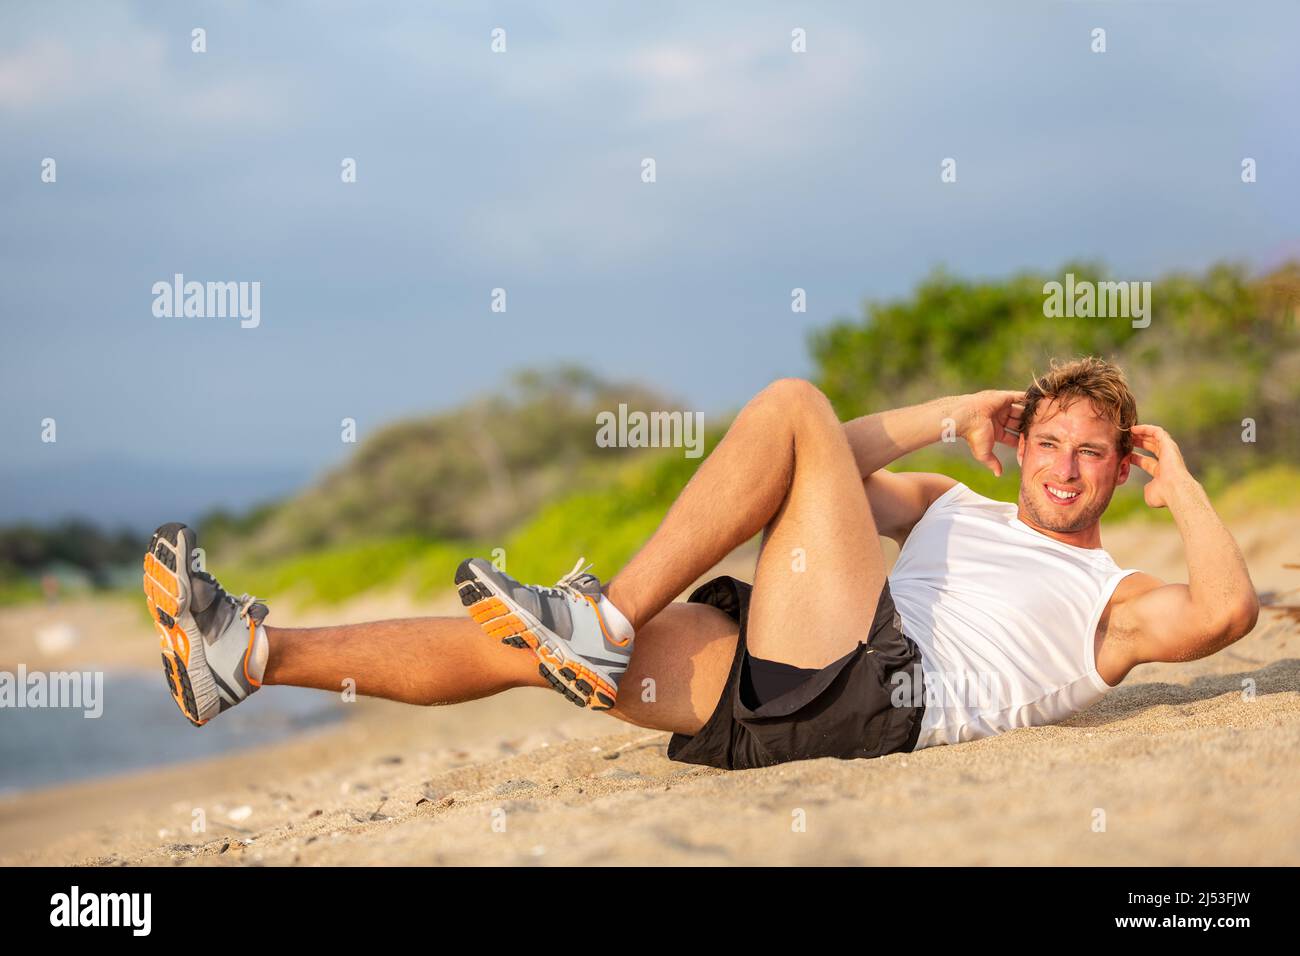 Übung Sit up Fitness Mann macht situps draußen im Sommer Strand. Fit Athlet Training Cross-Training Fahrrad knirscht, um schräge Mykel zu aktivieren Stockfoto